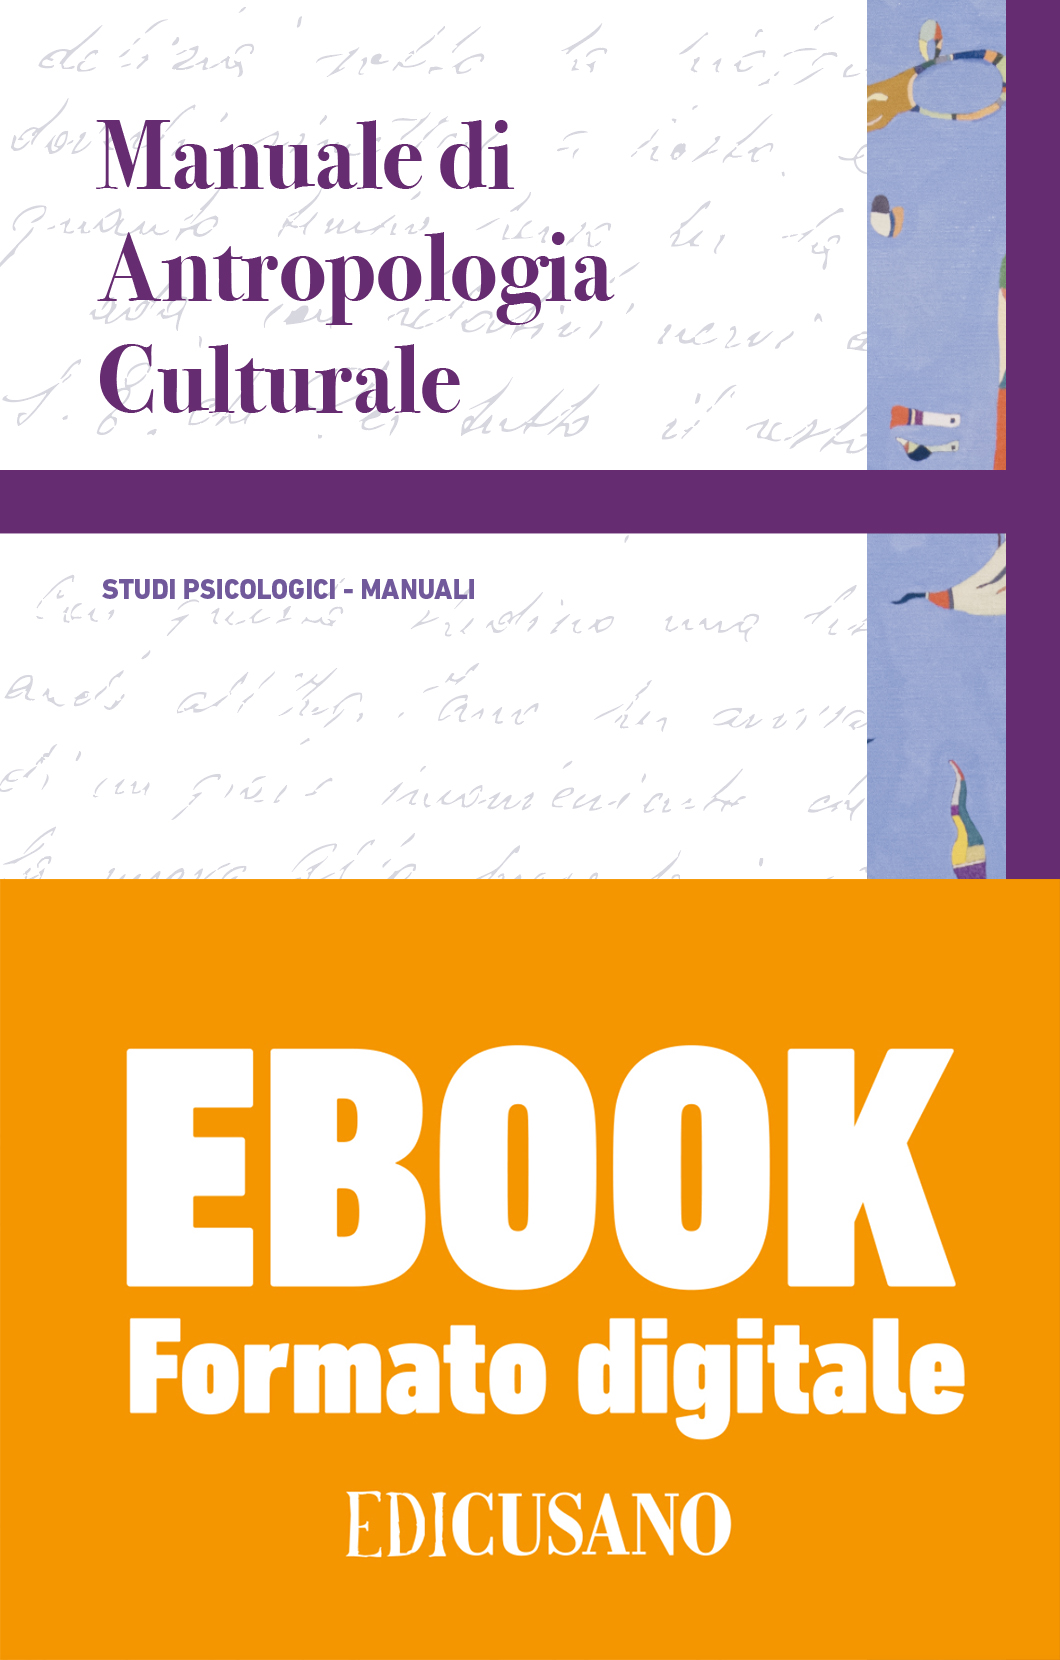 Manuale di Antropologia Culturale - (Formato Digitale) .Mobi - Edicusano